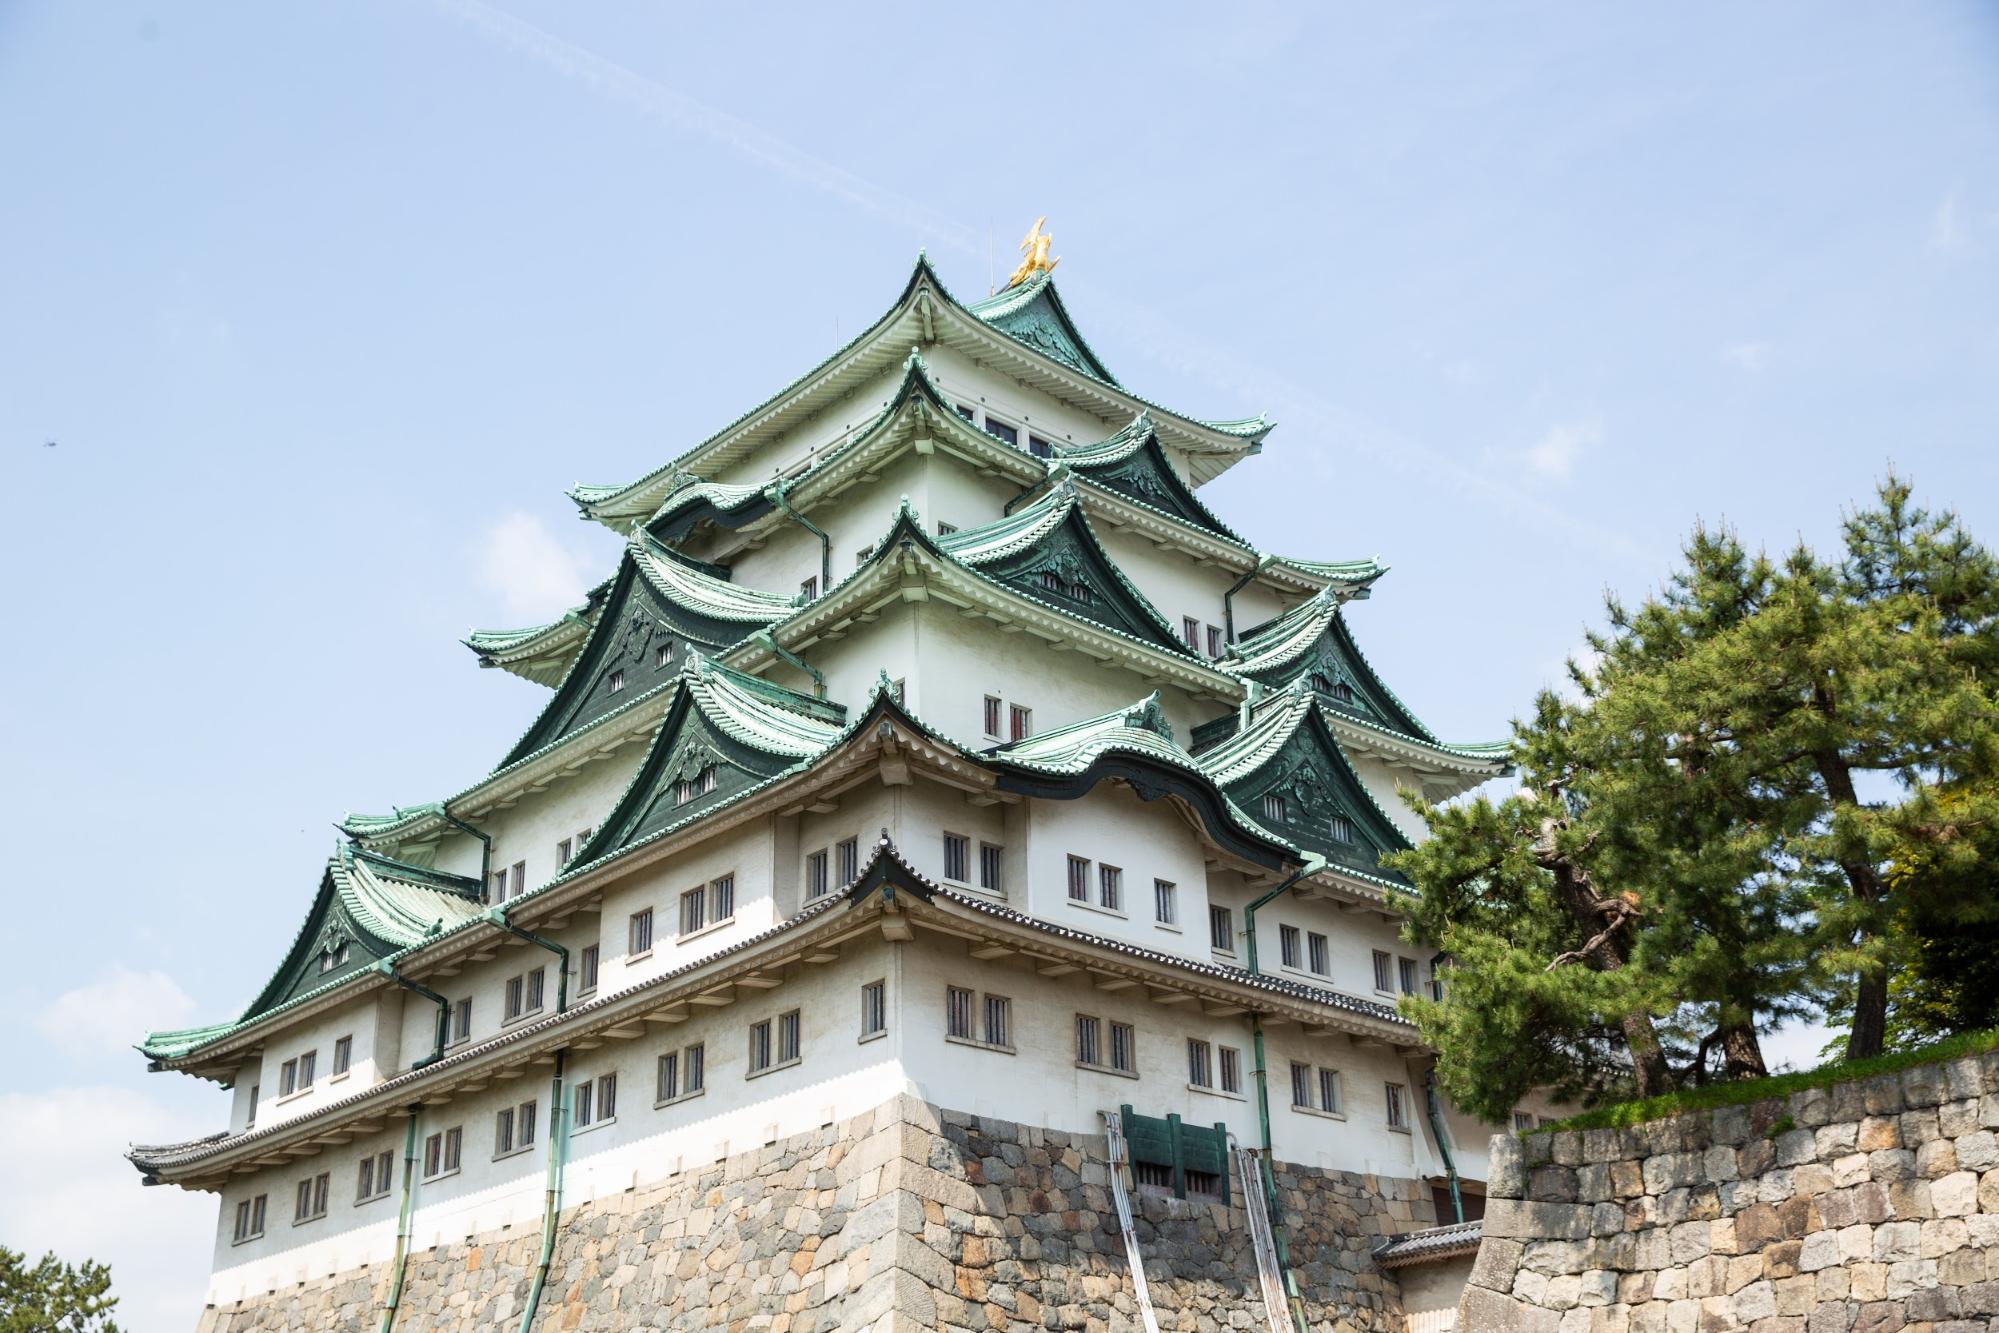 Lâu đài Nagoya